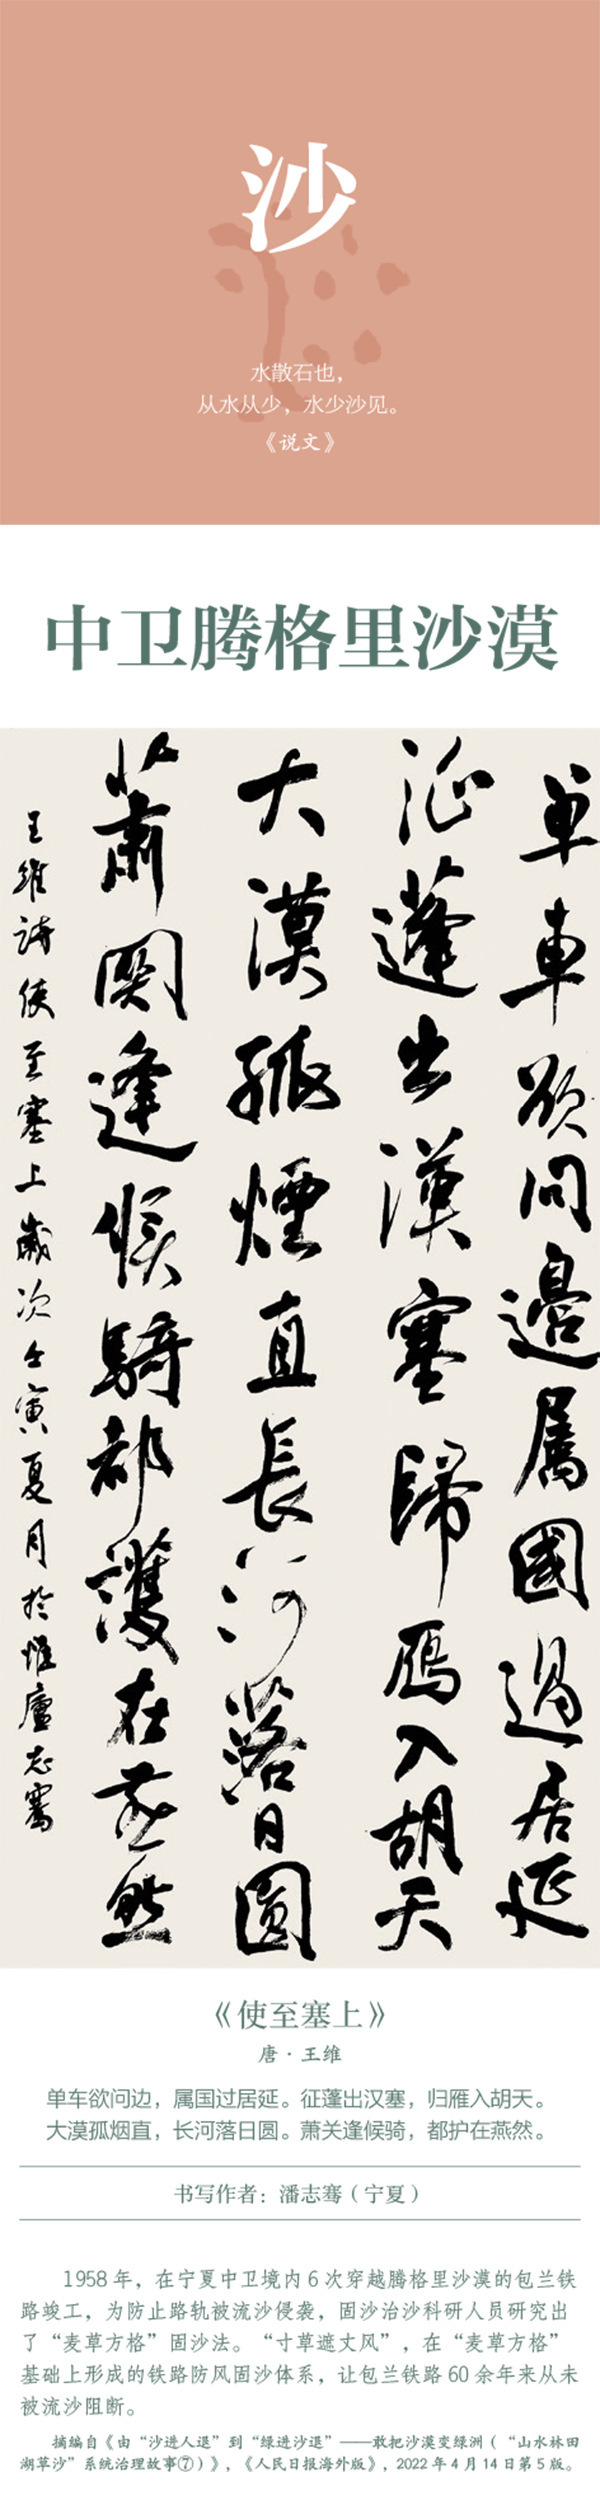 中国书协主题创作书法系列展——美丽中国插图26题字网